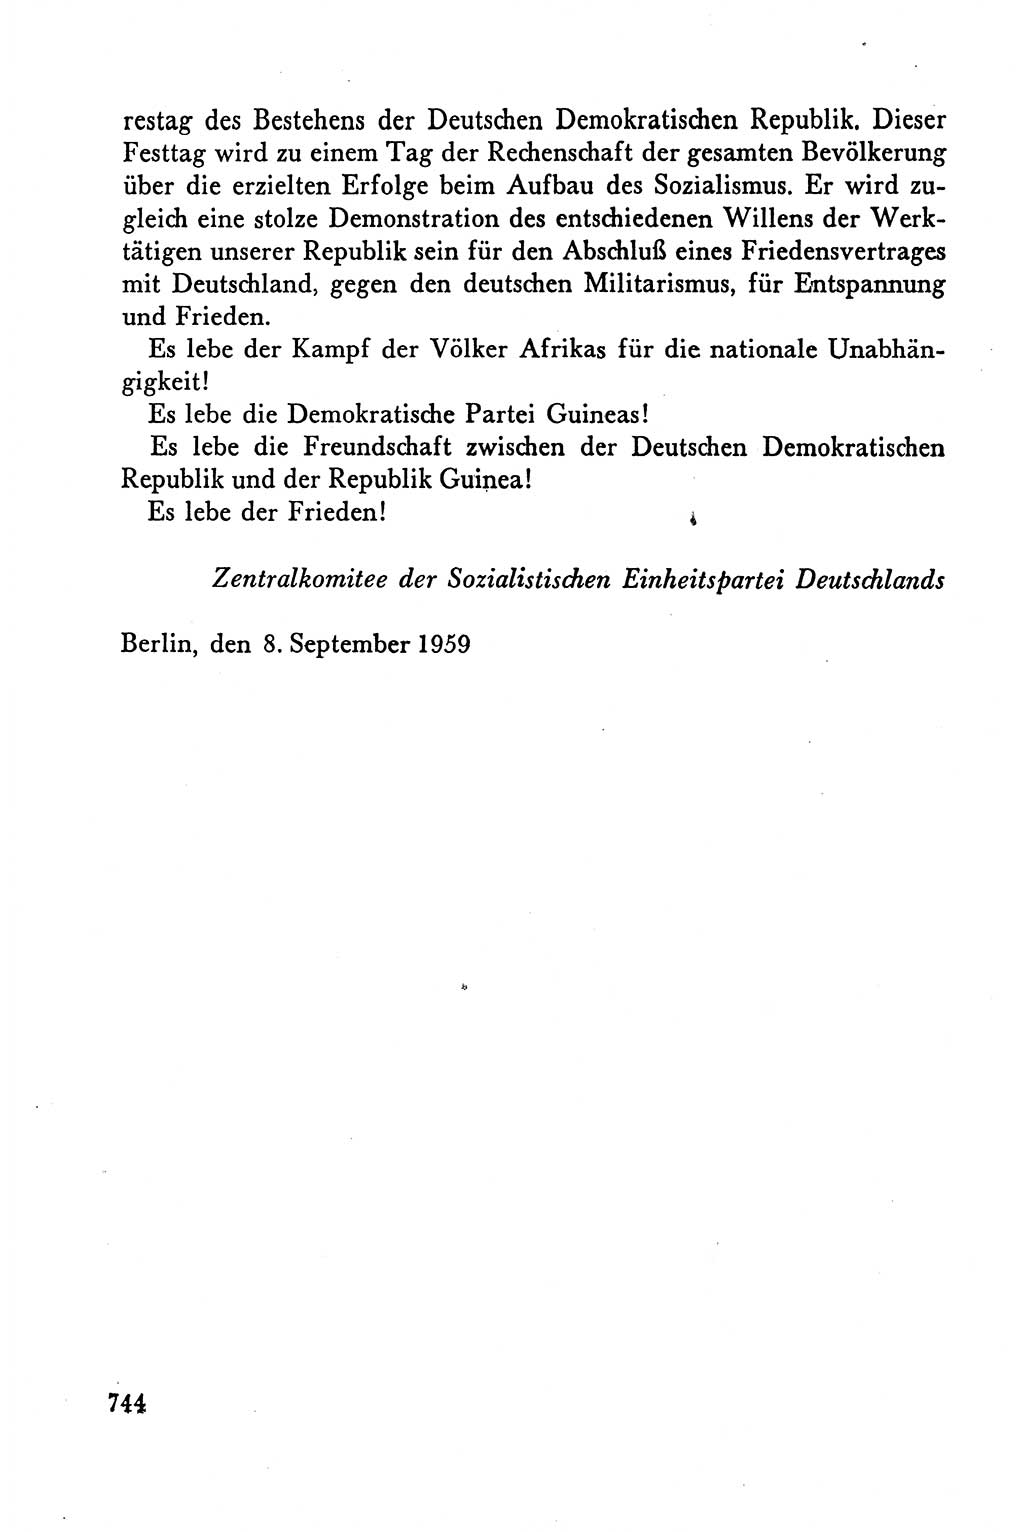 Dokumente der Sozialistischen Einheitspartei Deutschlands (SED) [Deutsche Demokratische Republik (DDR)] 1958-1959, Seite 744 (Dok. SED DDR 1958-1959, S. 744)